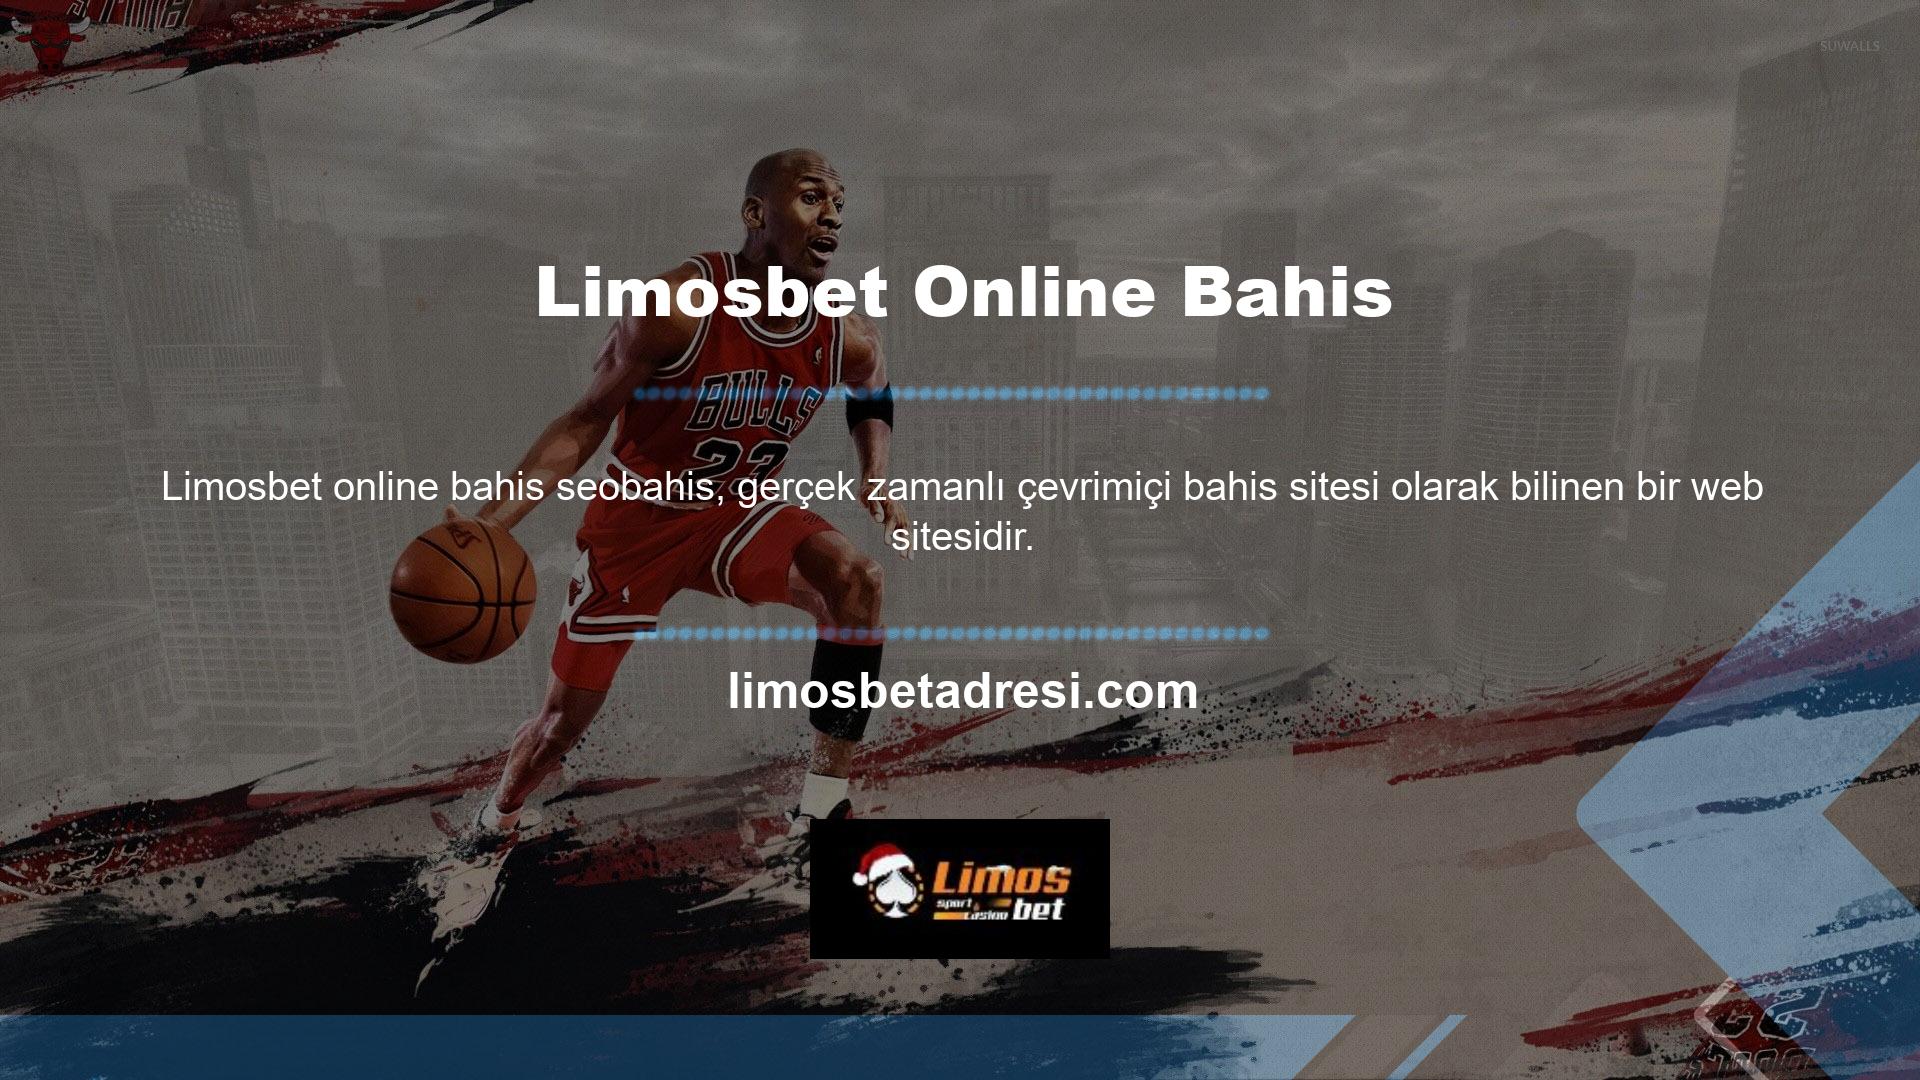 Ancak Limosbet online bahis casino sitesinde canlı bahislerin yanı sıra casino oyunları da oynayabilirsiniz